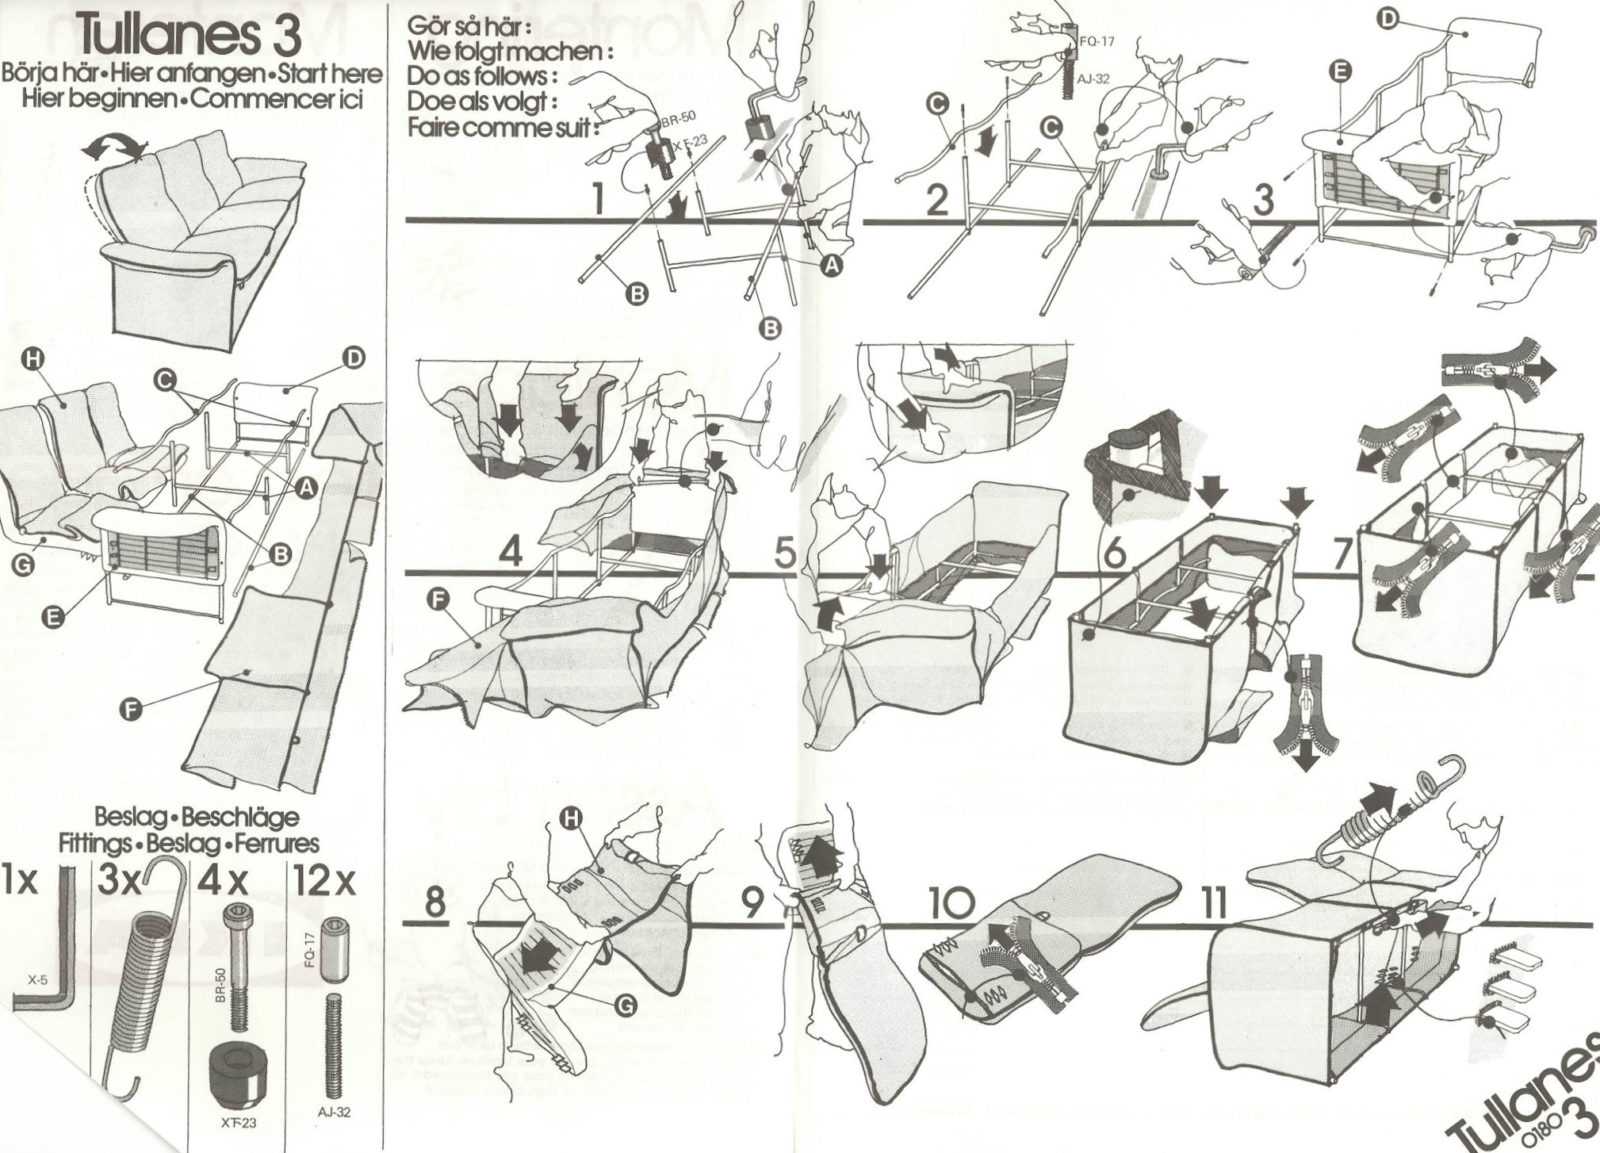 Notice de montage IKEA du fauteuil TULLANÄS, complexe et difficile à comprendre.